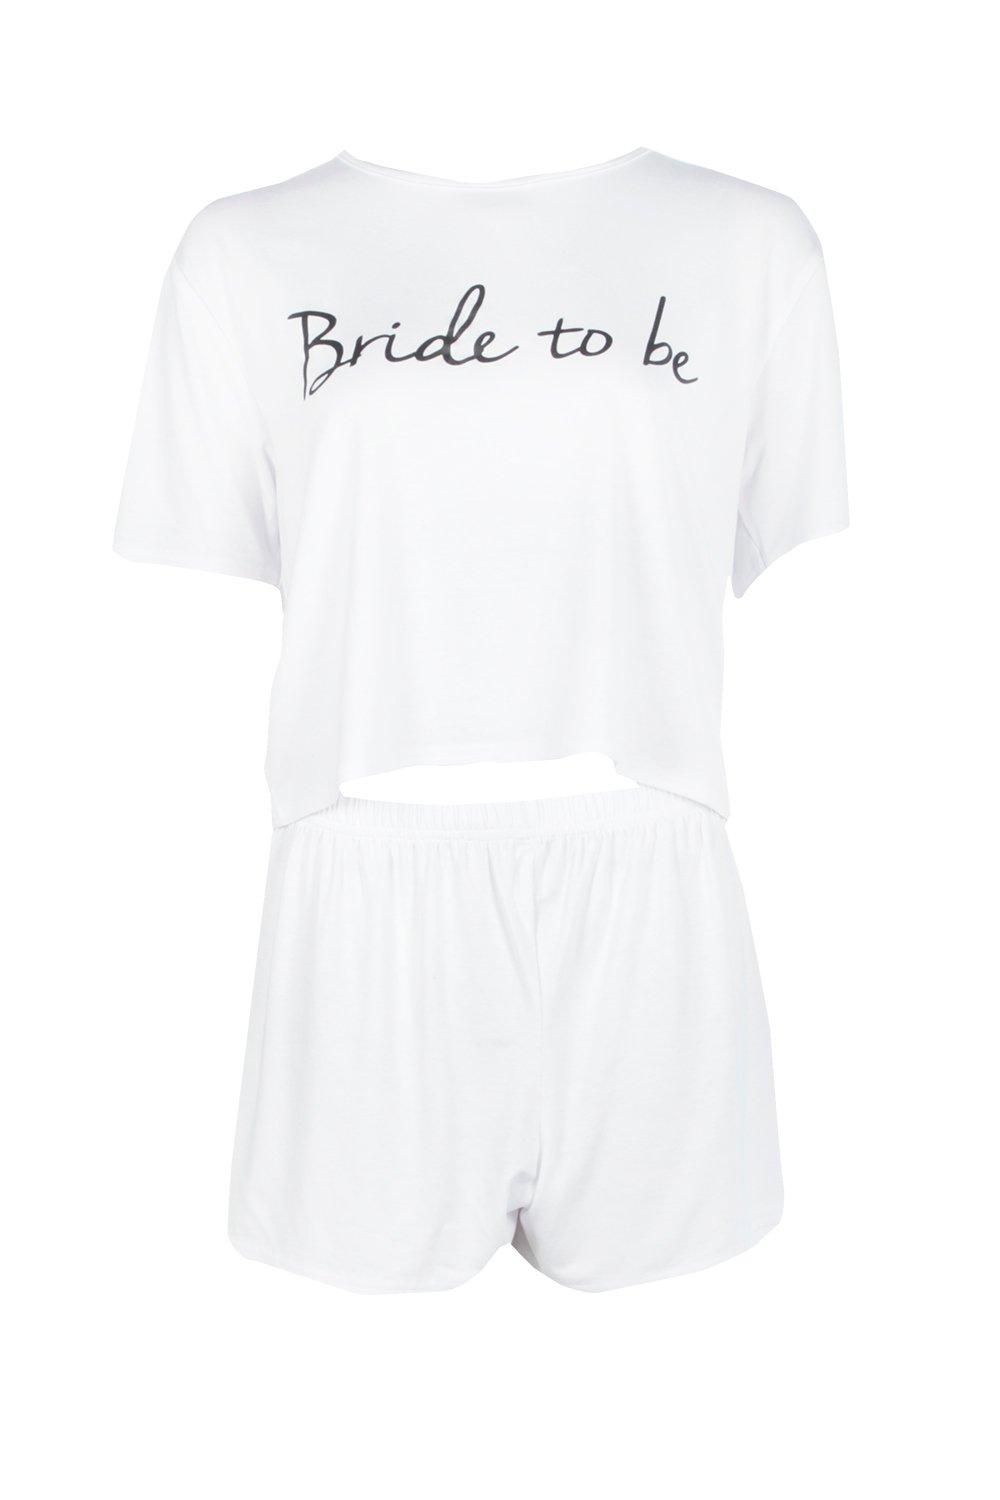 Bride To Be T-Shirt & Short Set | Boohoo.com (US & CA)